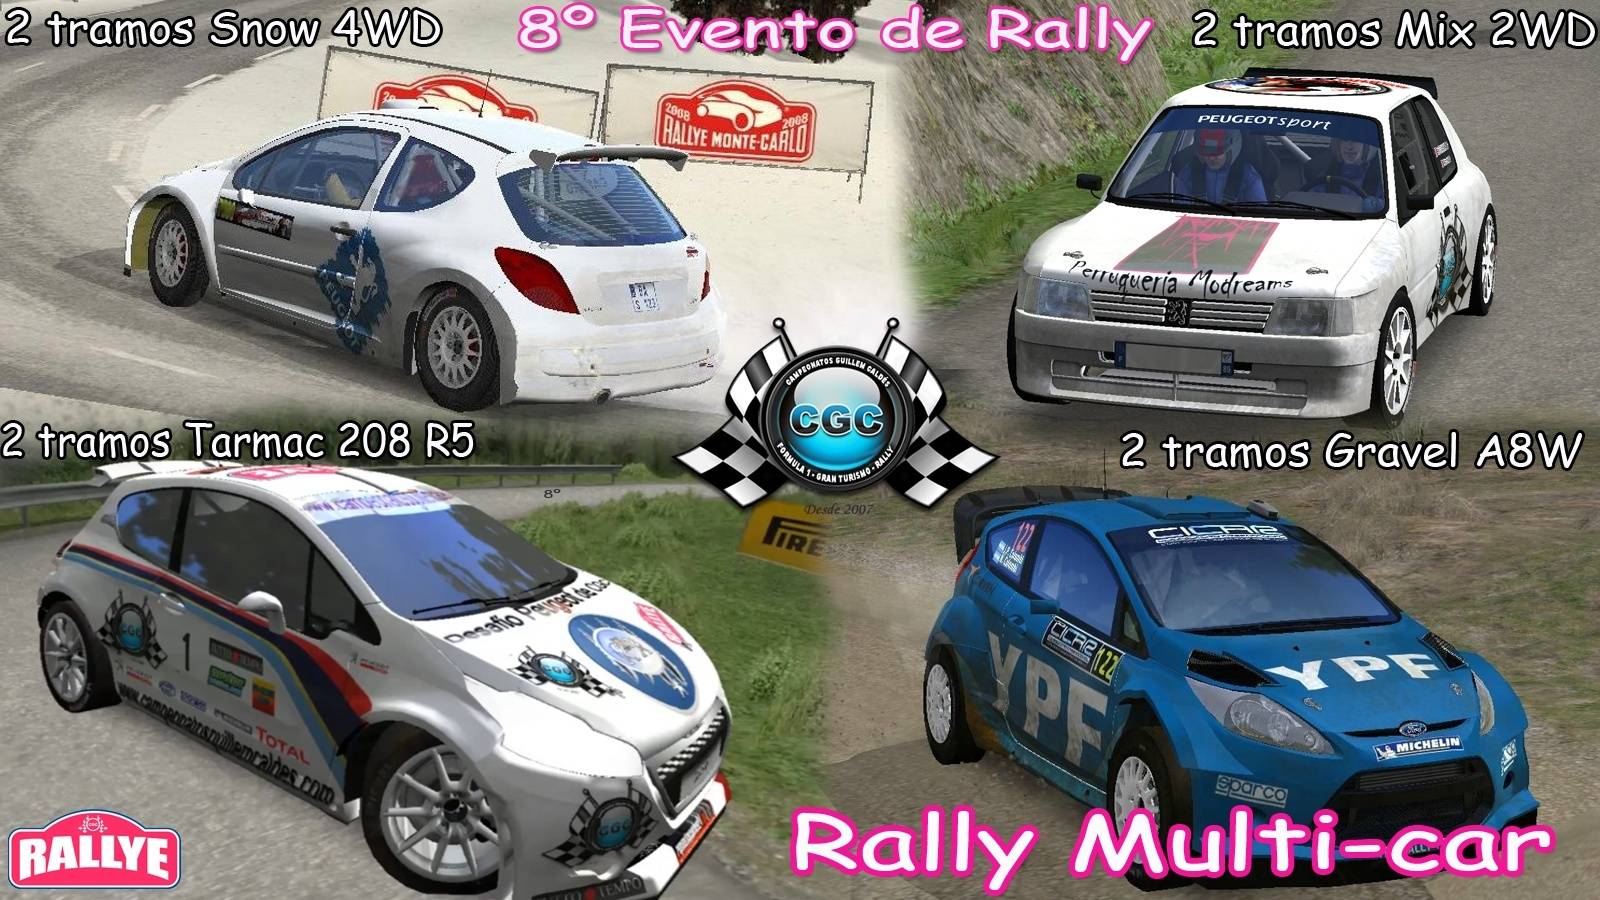 8º Evento de temporada   ▄▀▄ Rally Multi-car  ▄▀▄  10/12/2014 Logo_e11